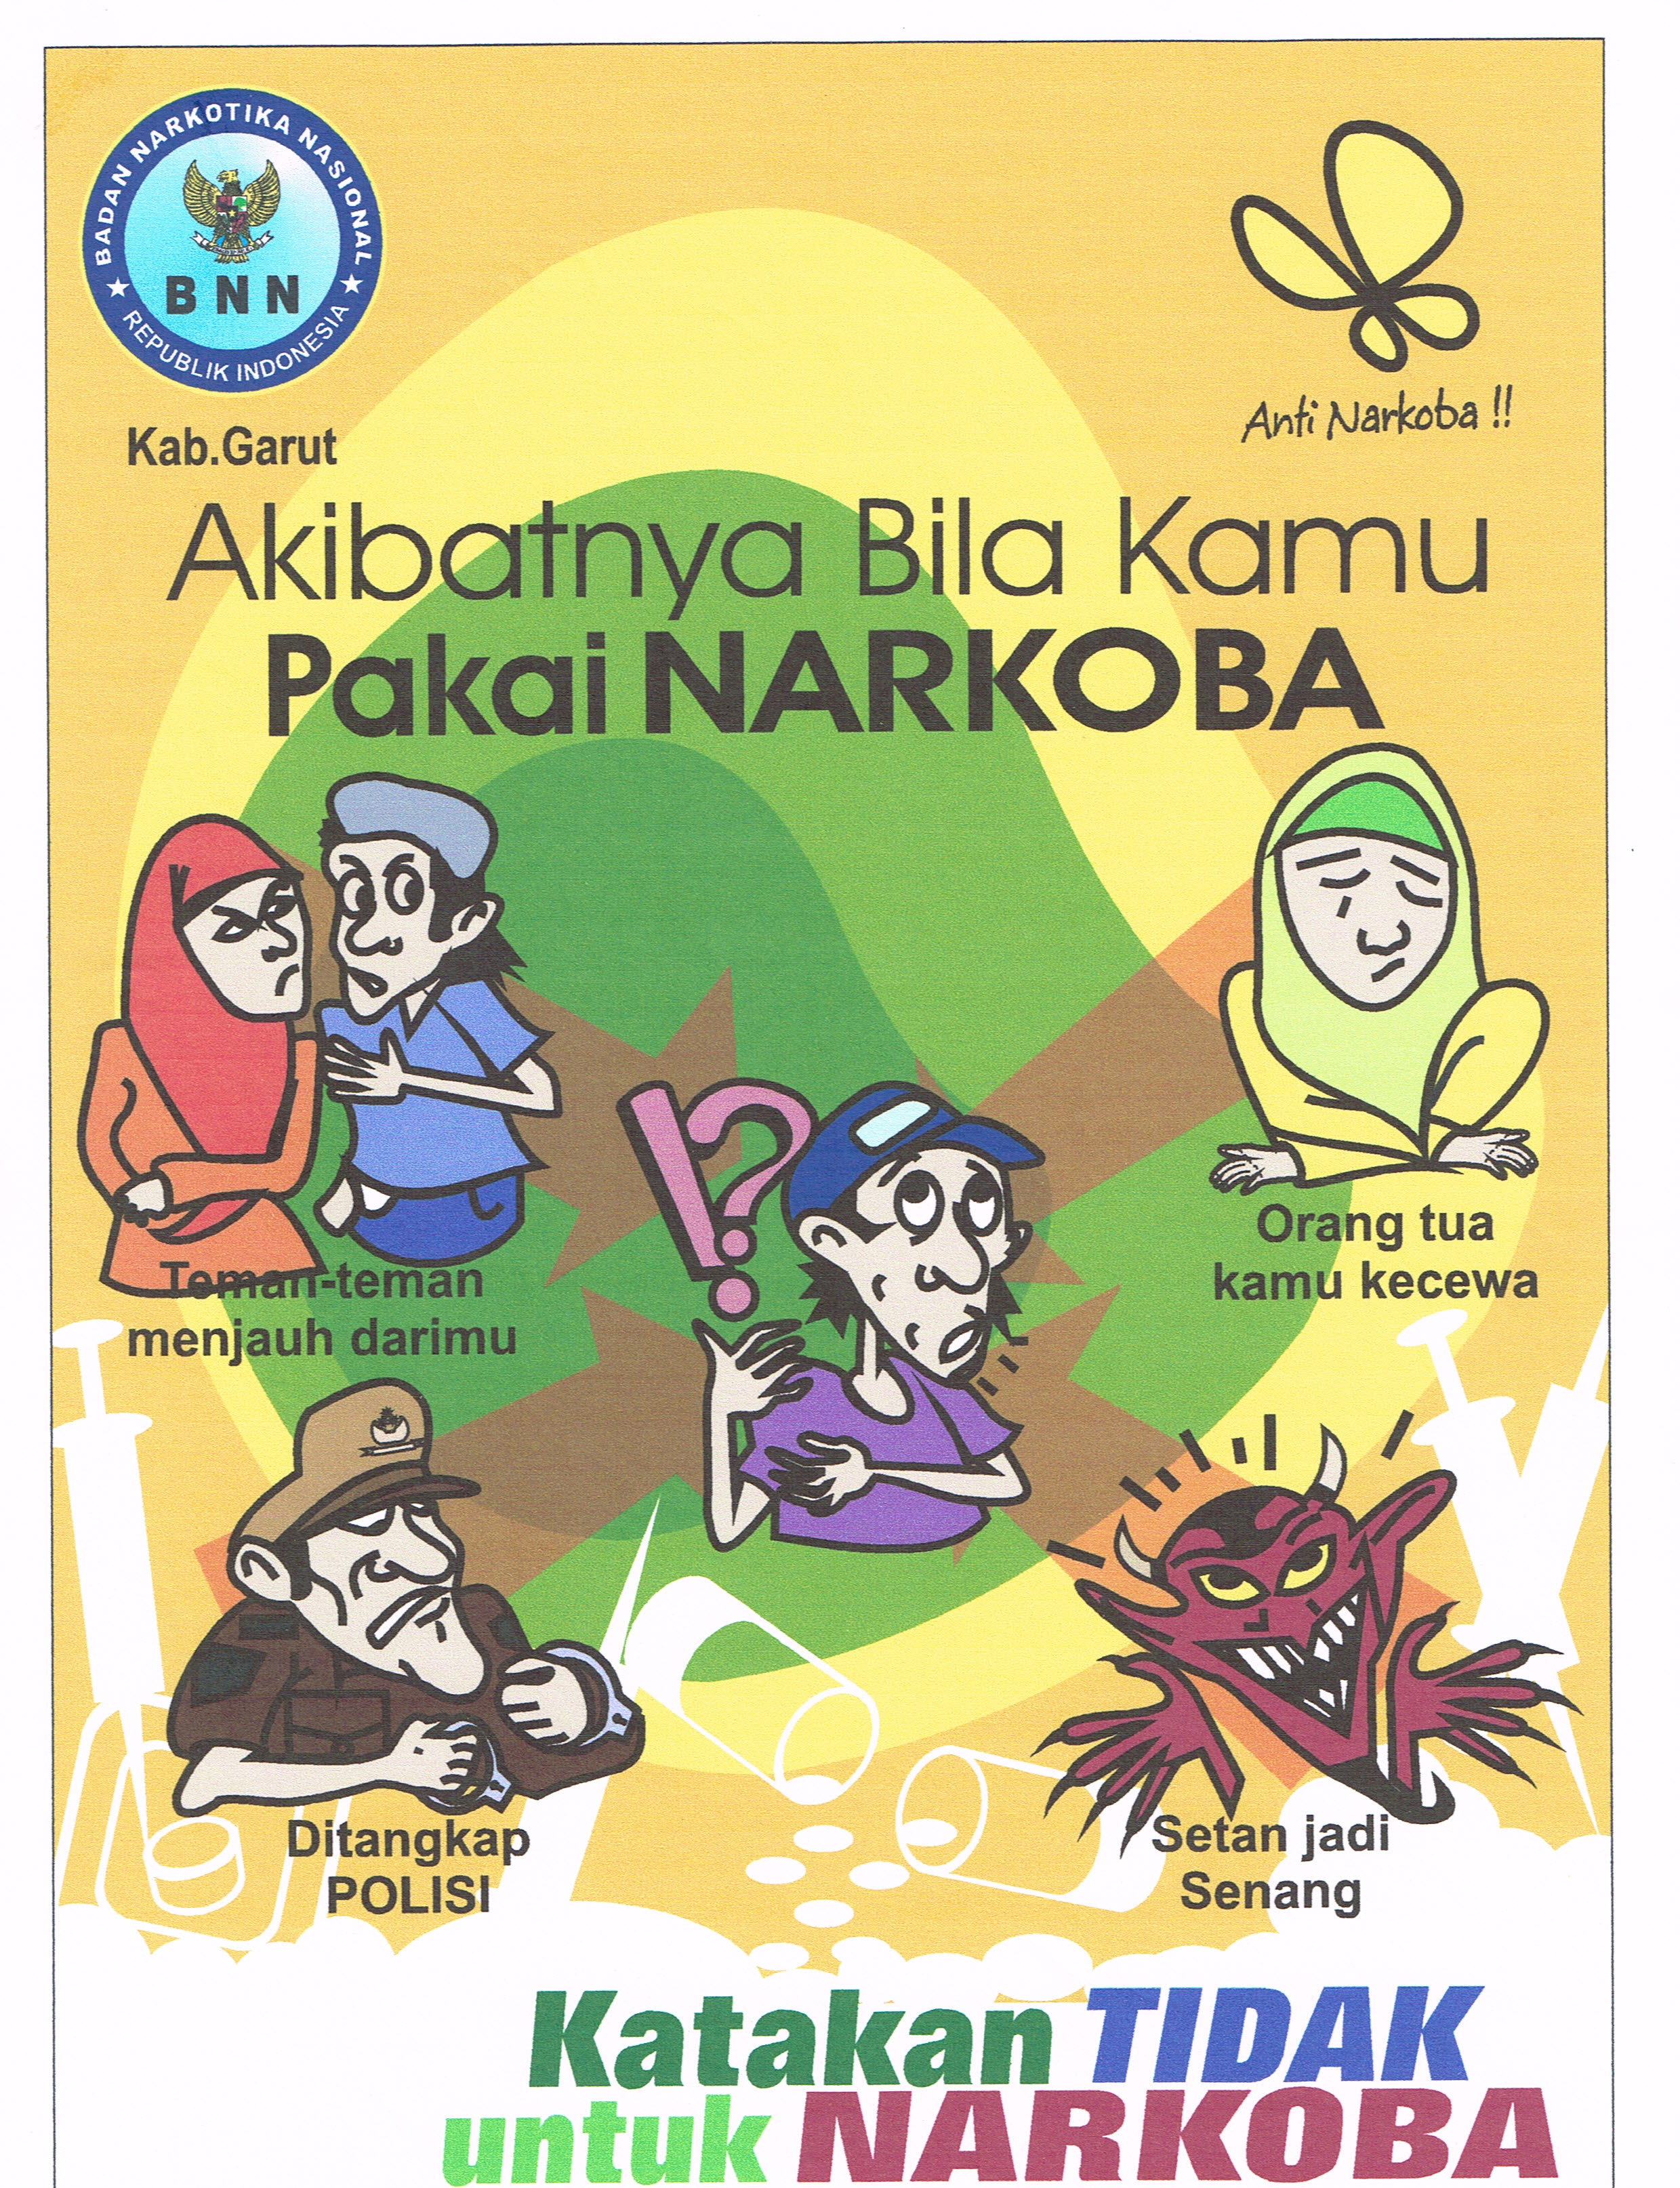 Poster Anti Narkoba BNNK Garut